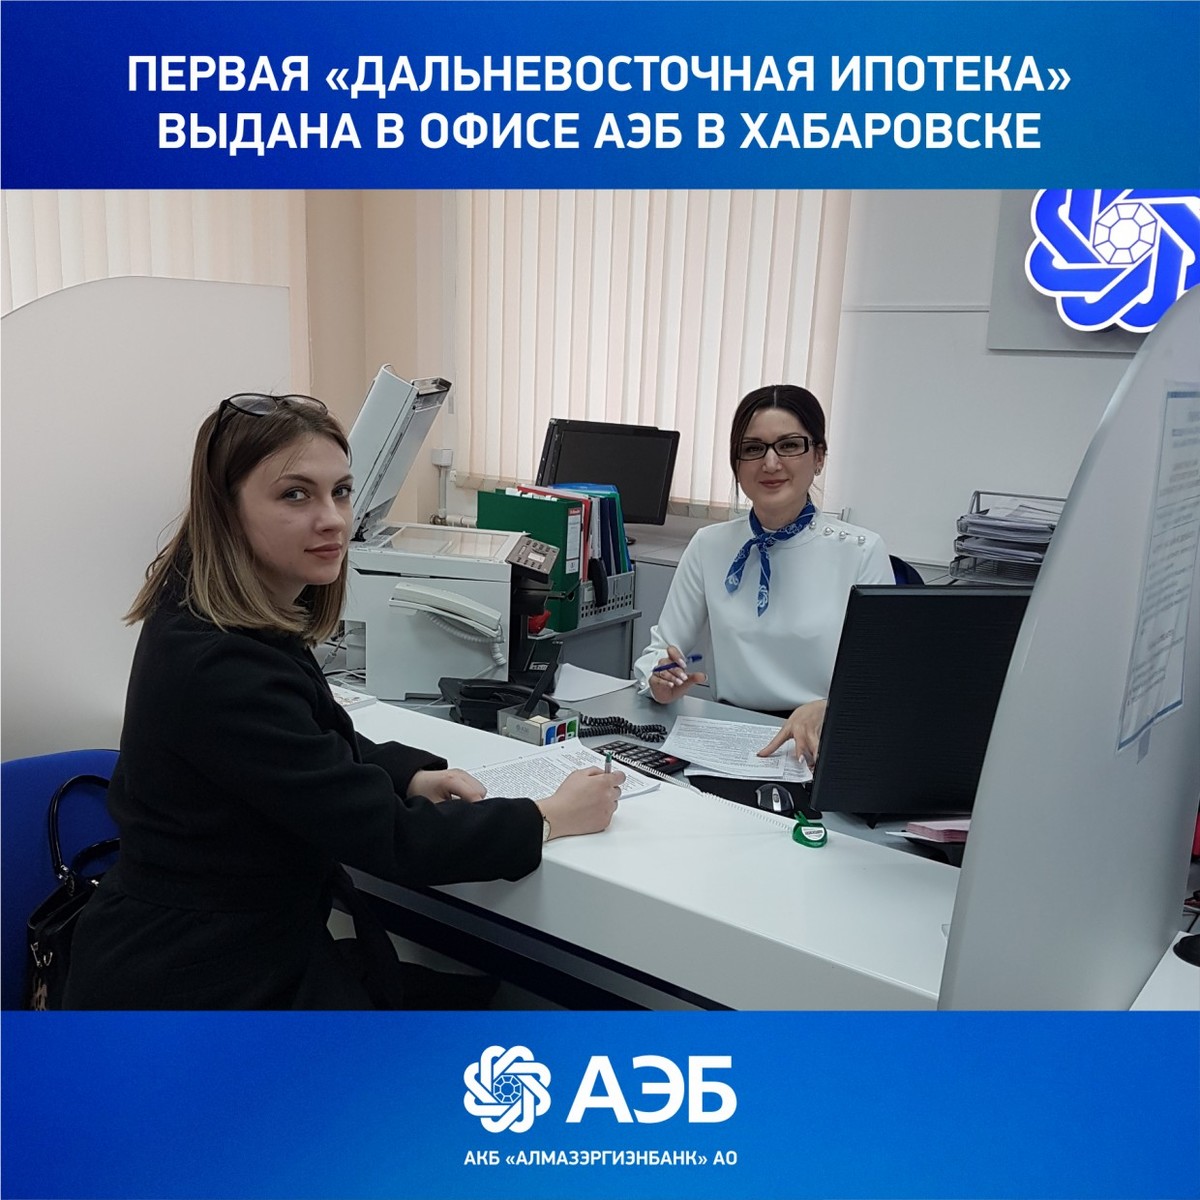 Первая «дальневосточная ипотека» выдана в офисе АЭБ в Хабаровске